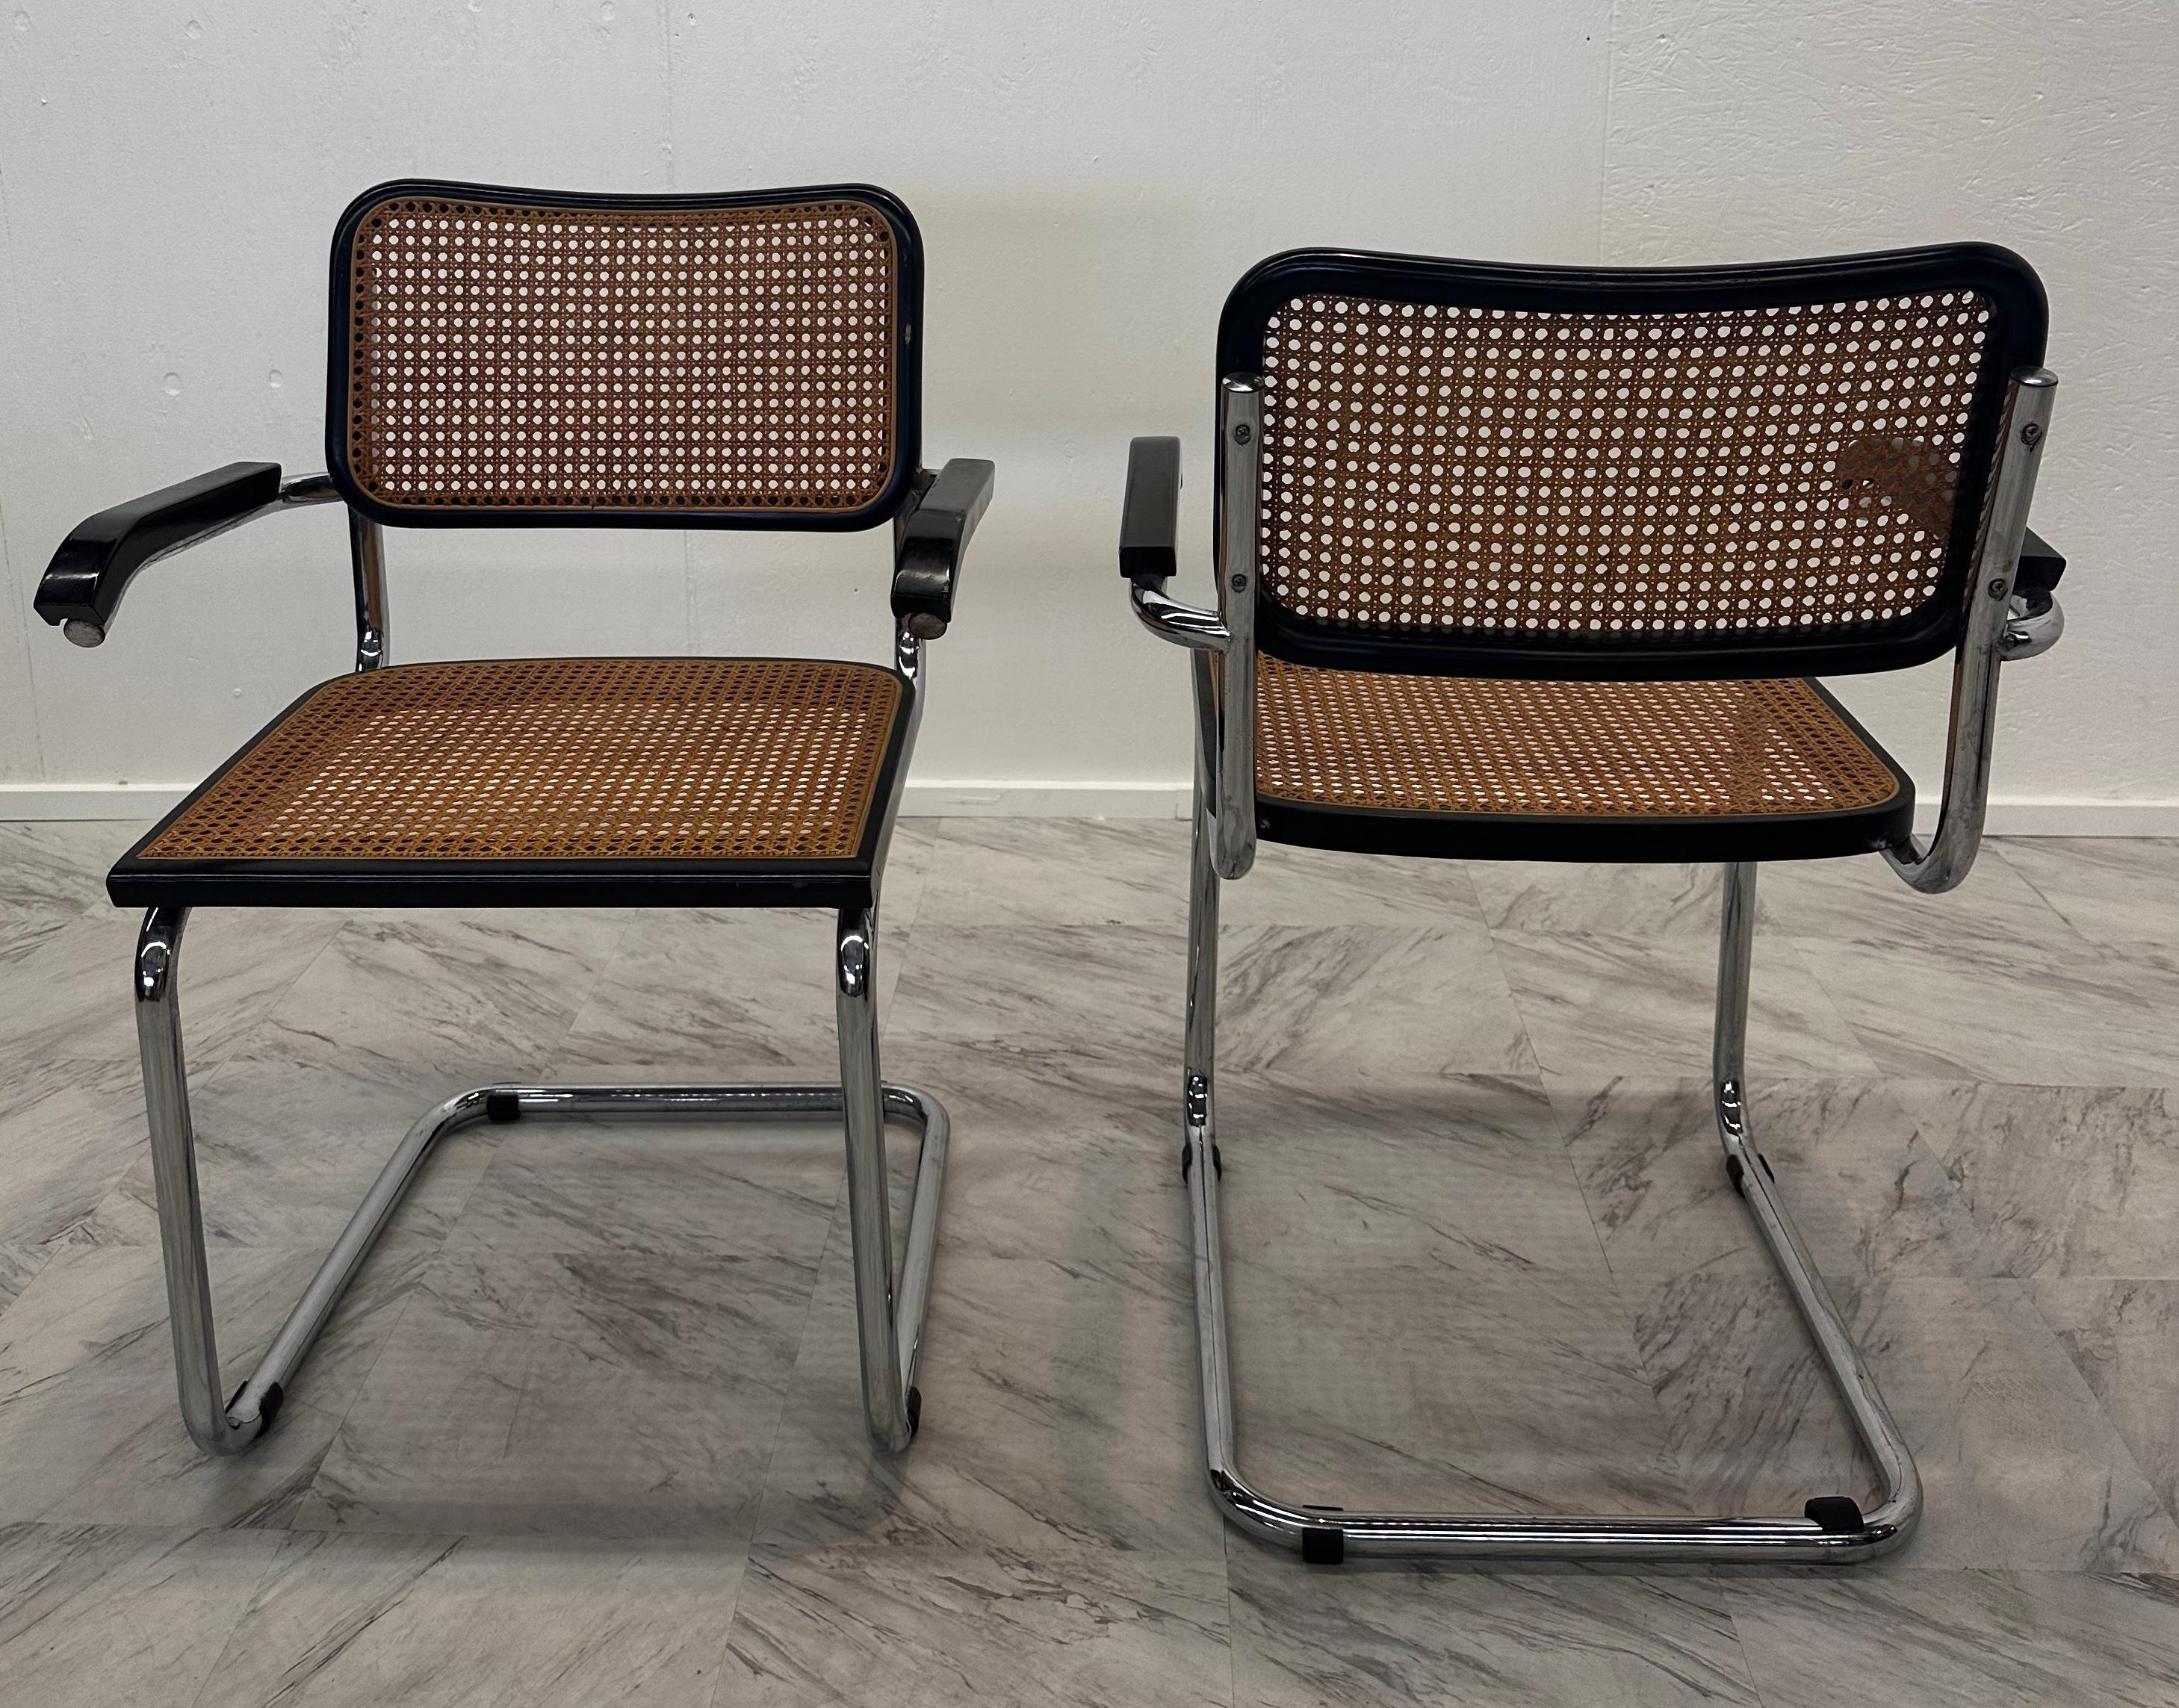 Paar von 4 Stühlen, Modell Cesca, entworfen von Marcel Breuer. Hergestellt in Italien um 1960 vom Hersteller Gavina. Gestell aus Metallrohr, Sitz und Rückenlehne aus Holz und Rattan. In gutem Originalzustand mit geringen alters- und